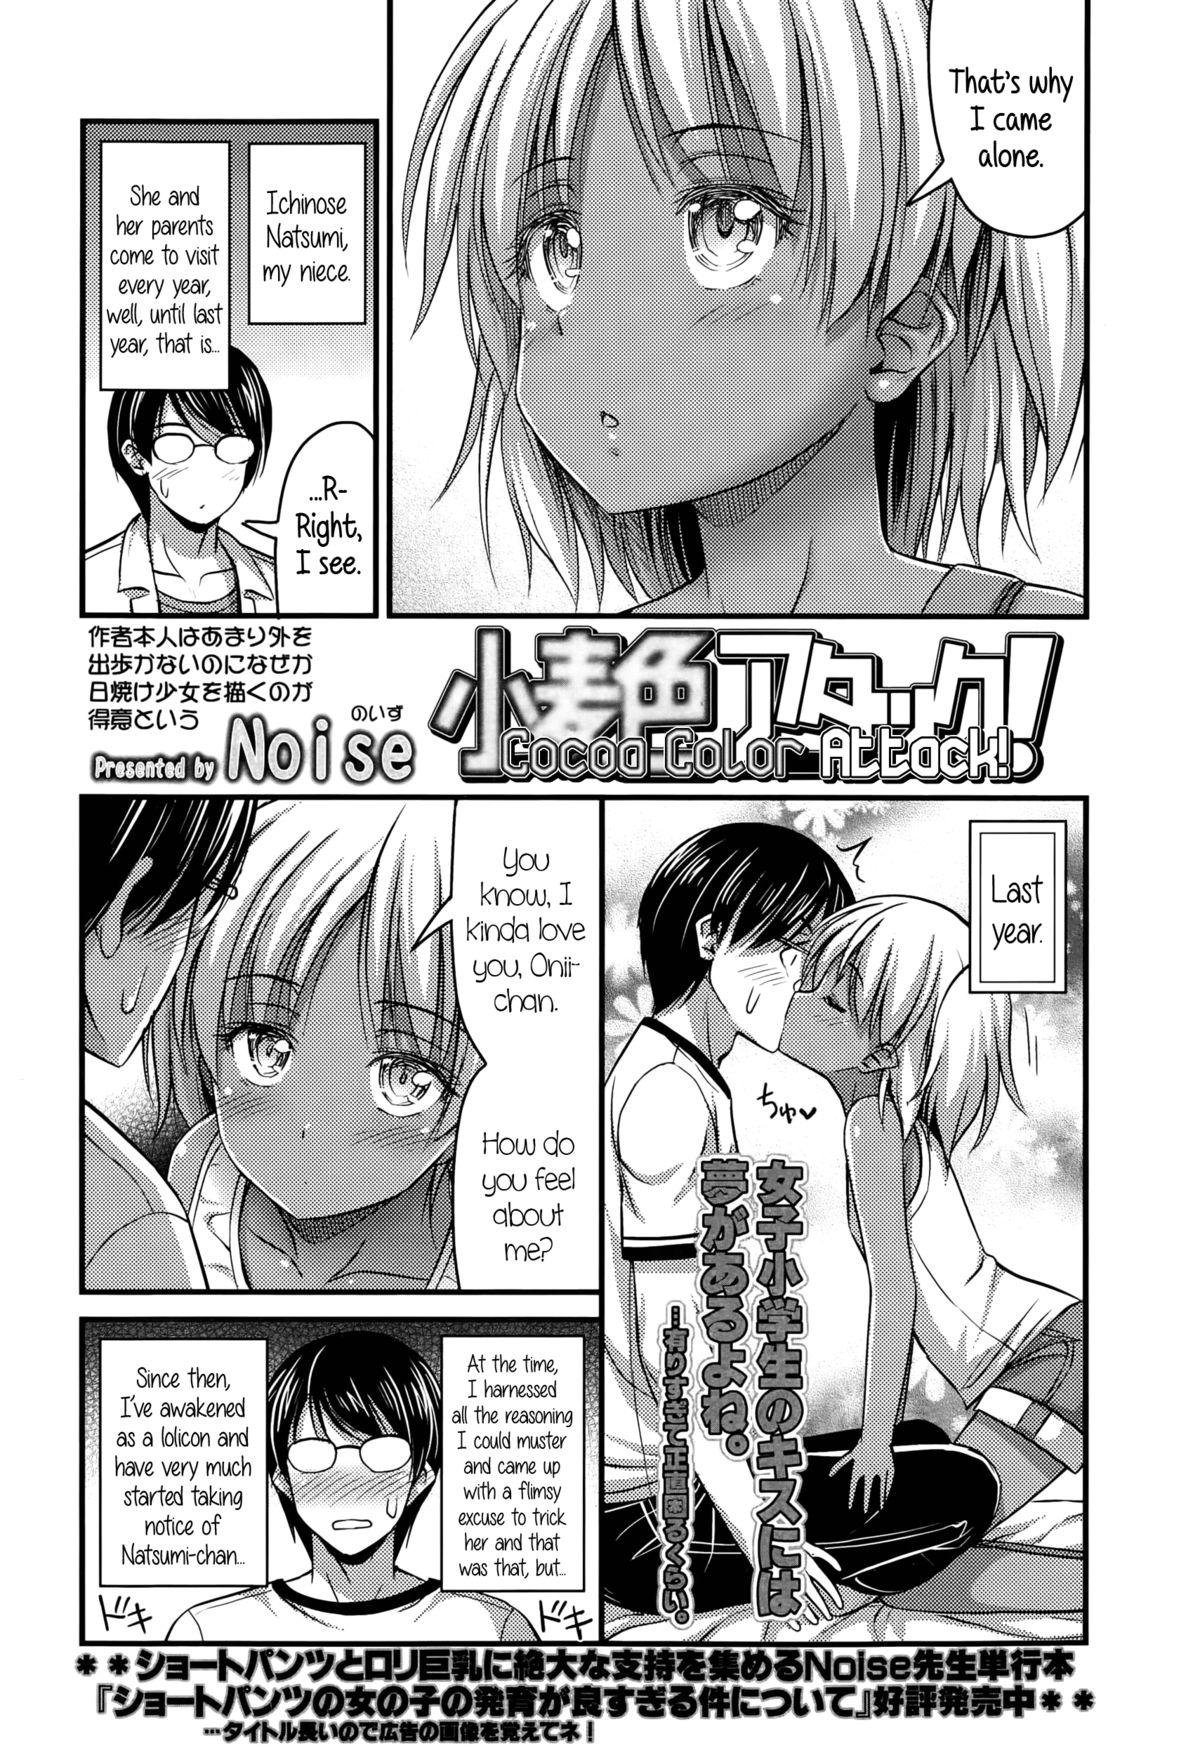 Chaturbate Komugi Iro Attack | Cocoa Color Attack Nudist - Page 2